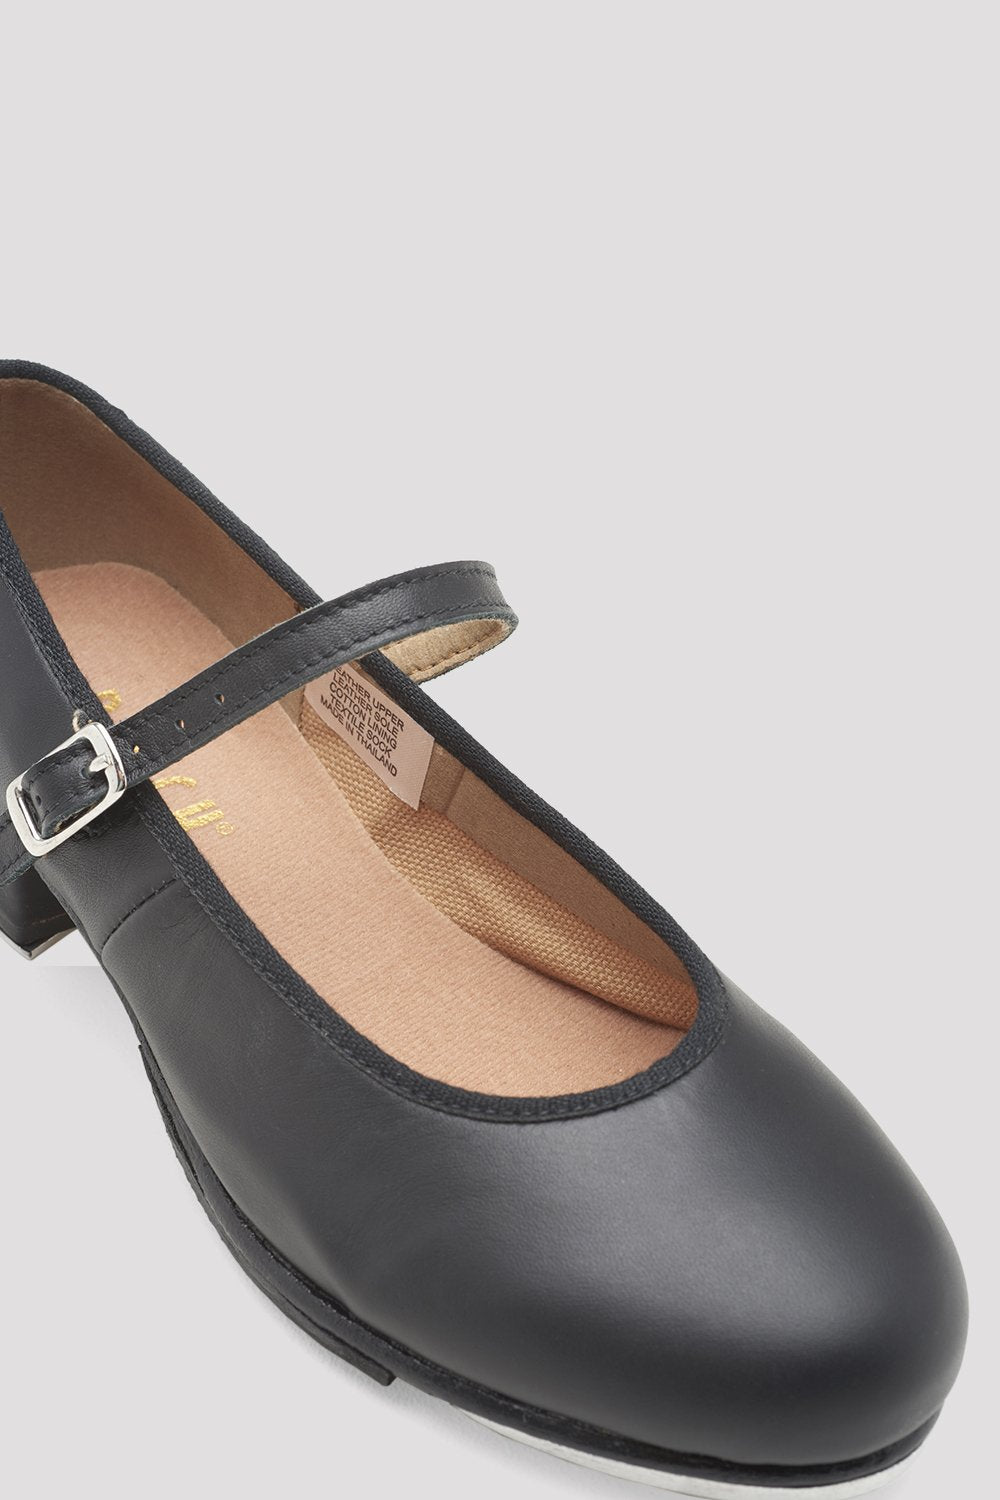 Ladies Tap-On Leather Tap Shoes, Black | BLOCH EU – BLOCH Dance EU